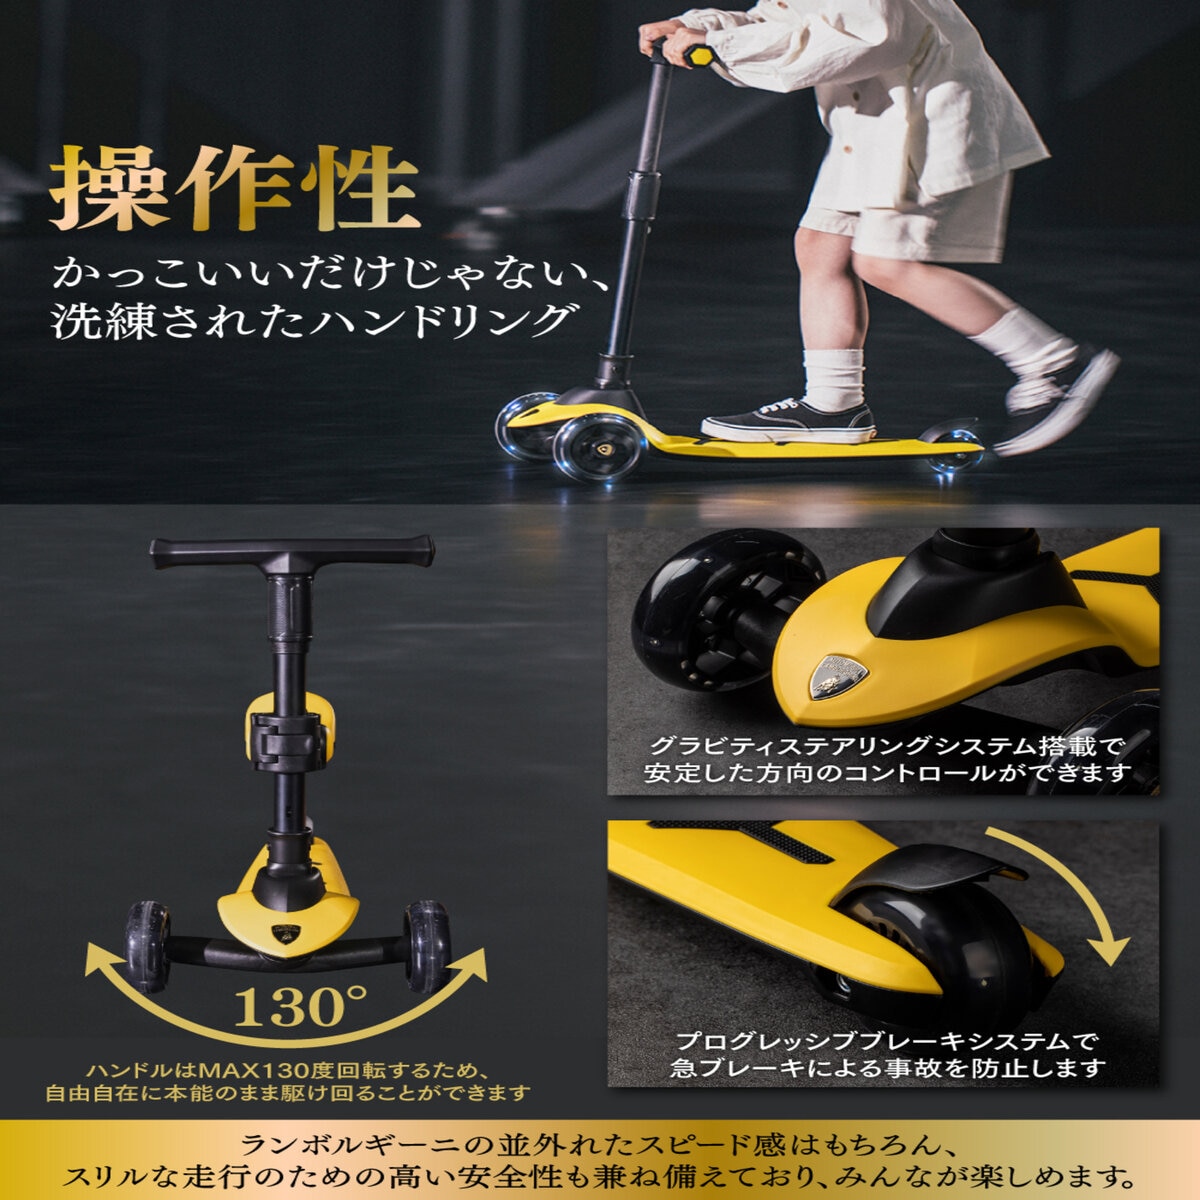 ランボルギーニ キック スクーター 4色 | Costco Japan